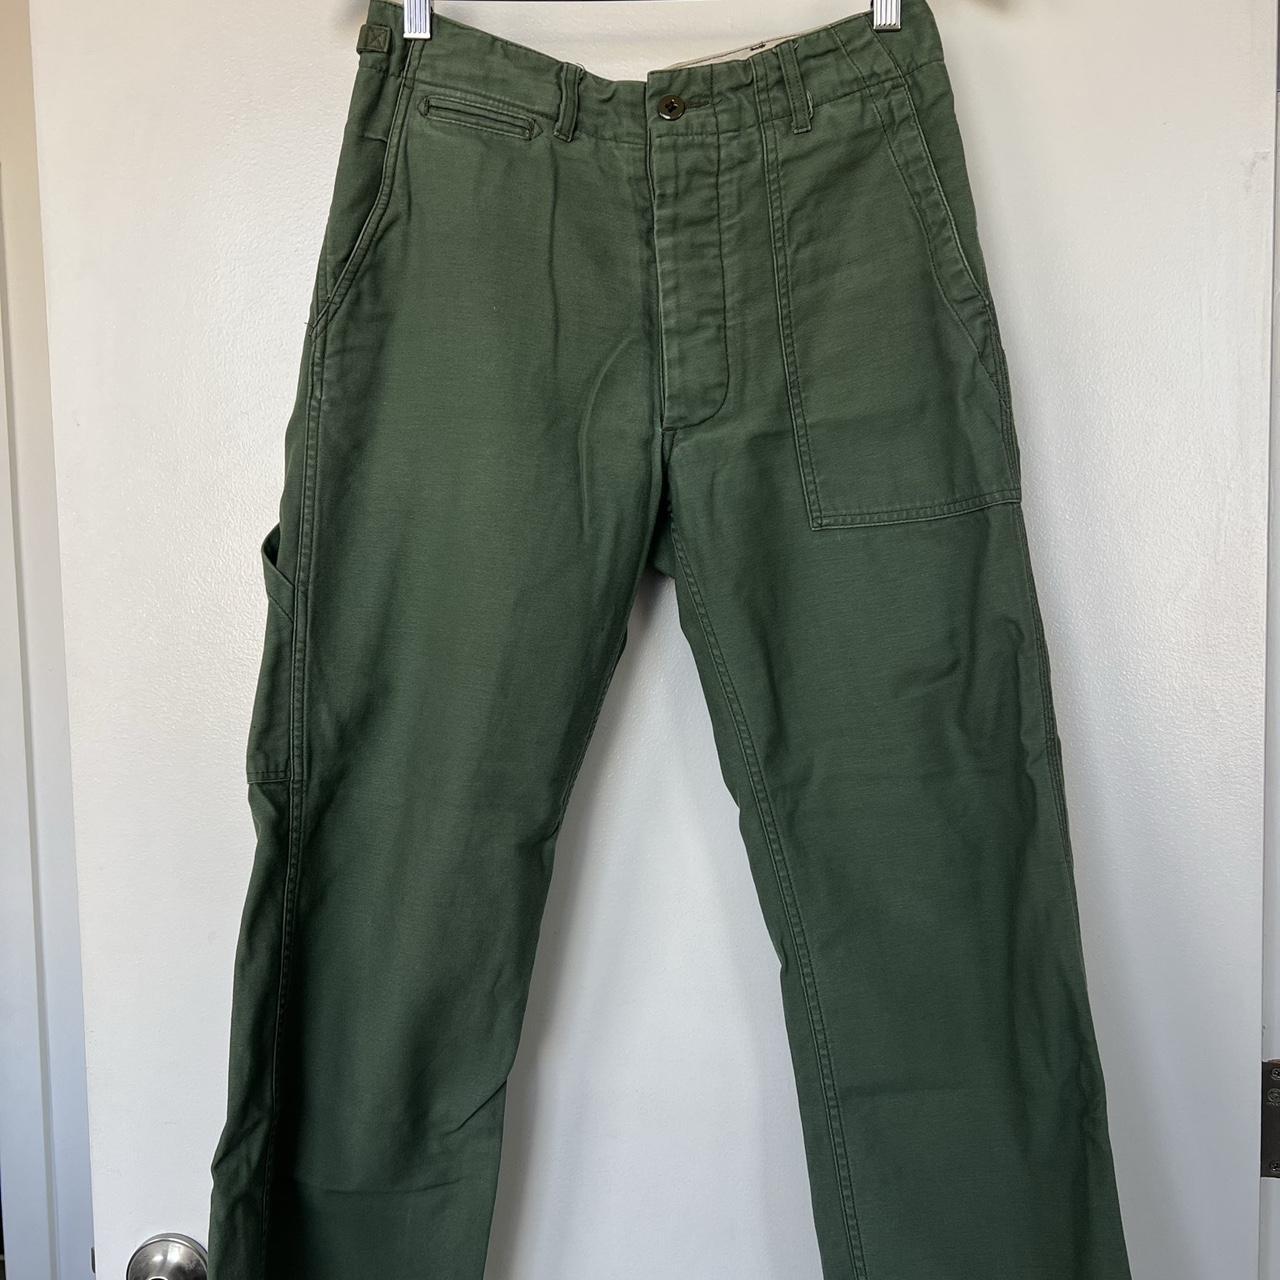 Engineered Garments x Beams Cargo pants... - Depop